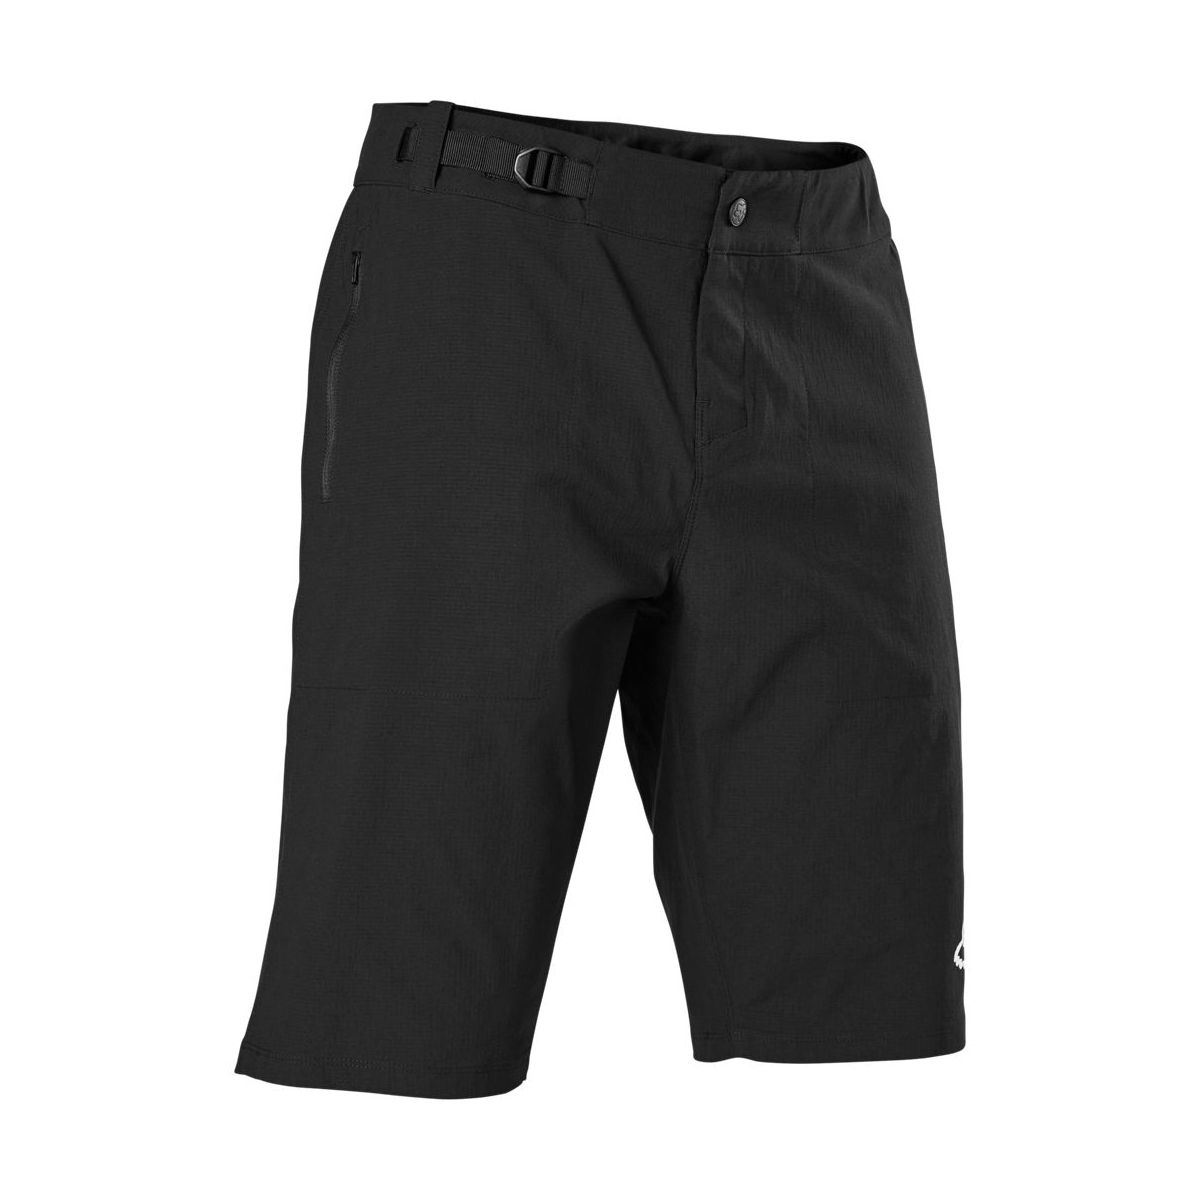 Pantalón corto Enduro MTB Fox Ranger con badana color negro